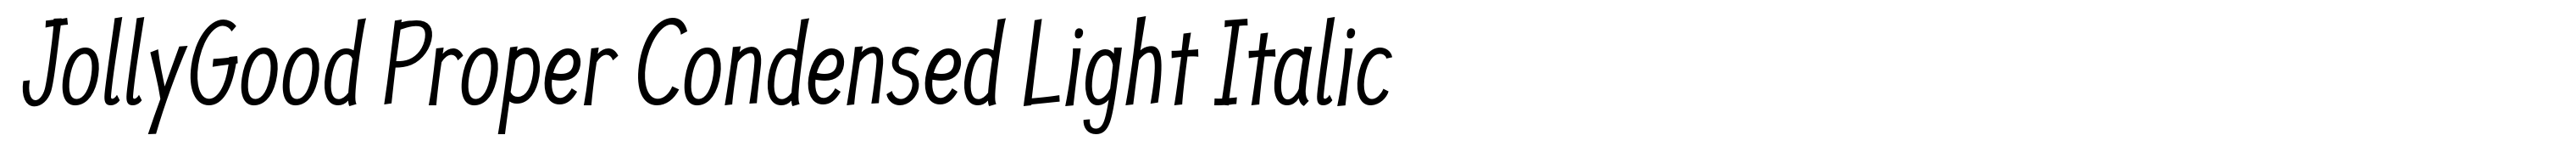 JollyGood Proper Condensed Light Italic